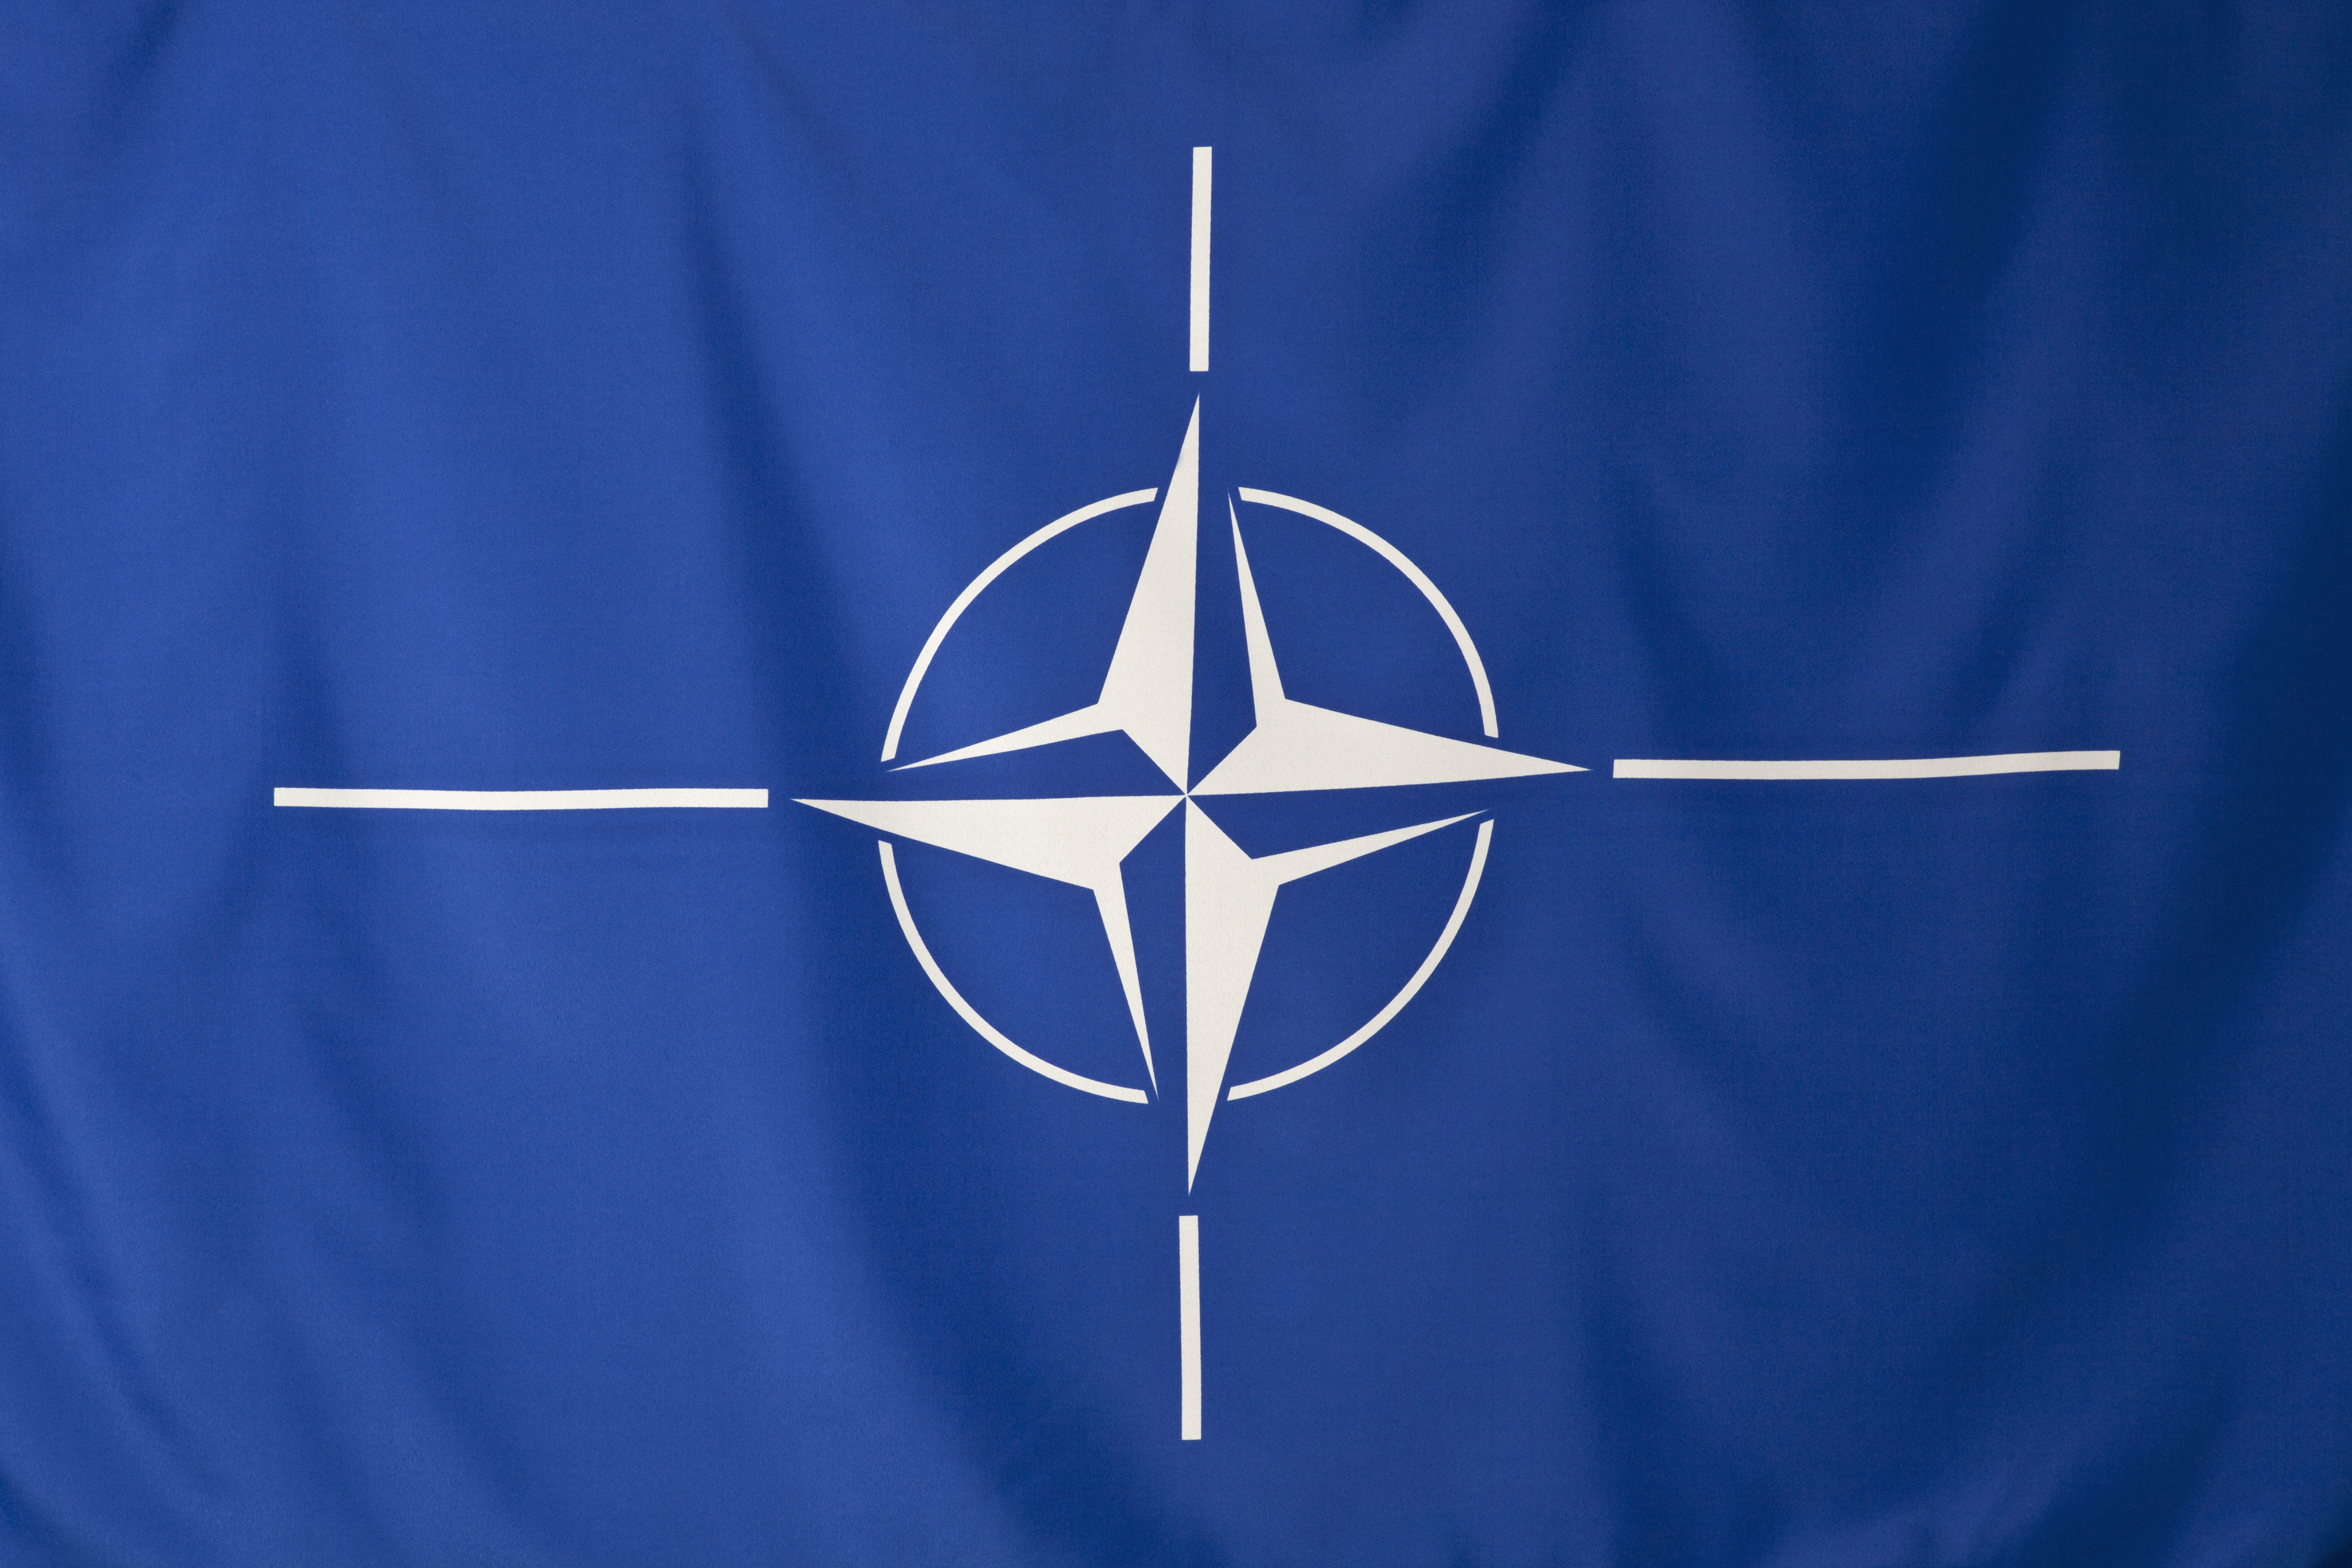 Pentru prima dată imporanța Mării Negre va fi recunoscută într-un document oficial NATO